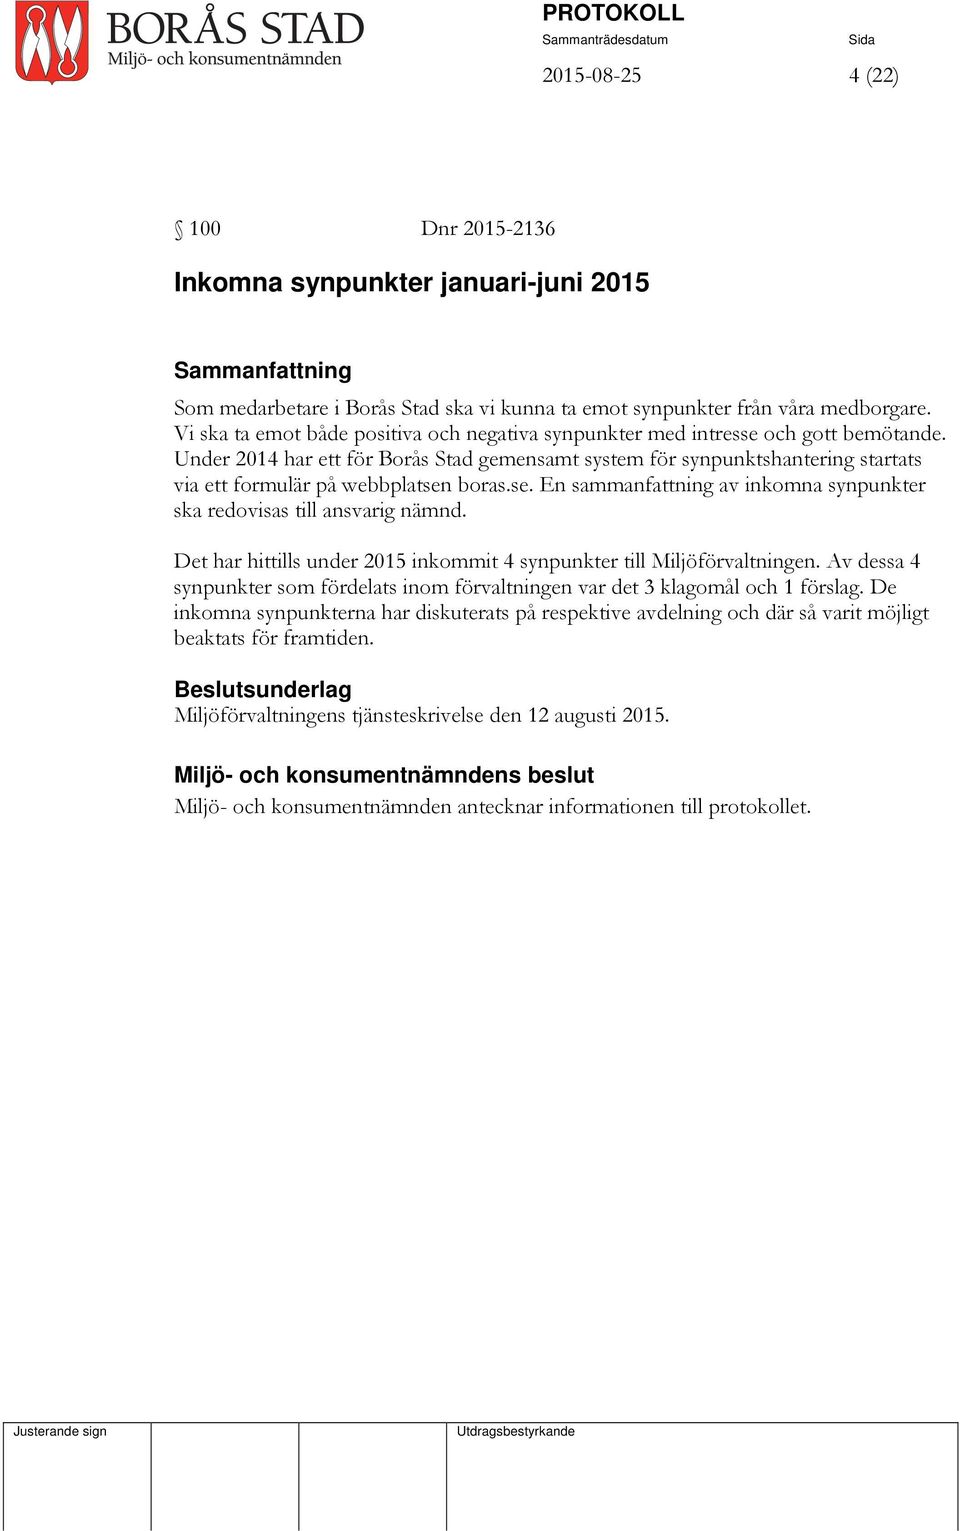 Under 2014 har ett för Borås Stad gemensamt system för synpunktshantering startats via ett formulär på webbplatsen boras.se. En sammanfattning av inkomna synpunkter ska redovisas till ansvarig nämnd.